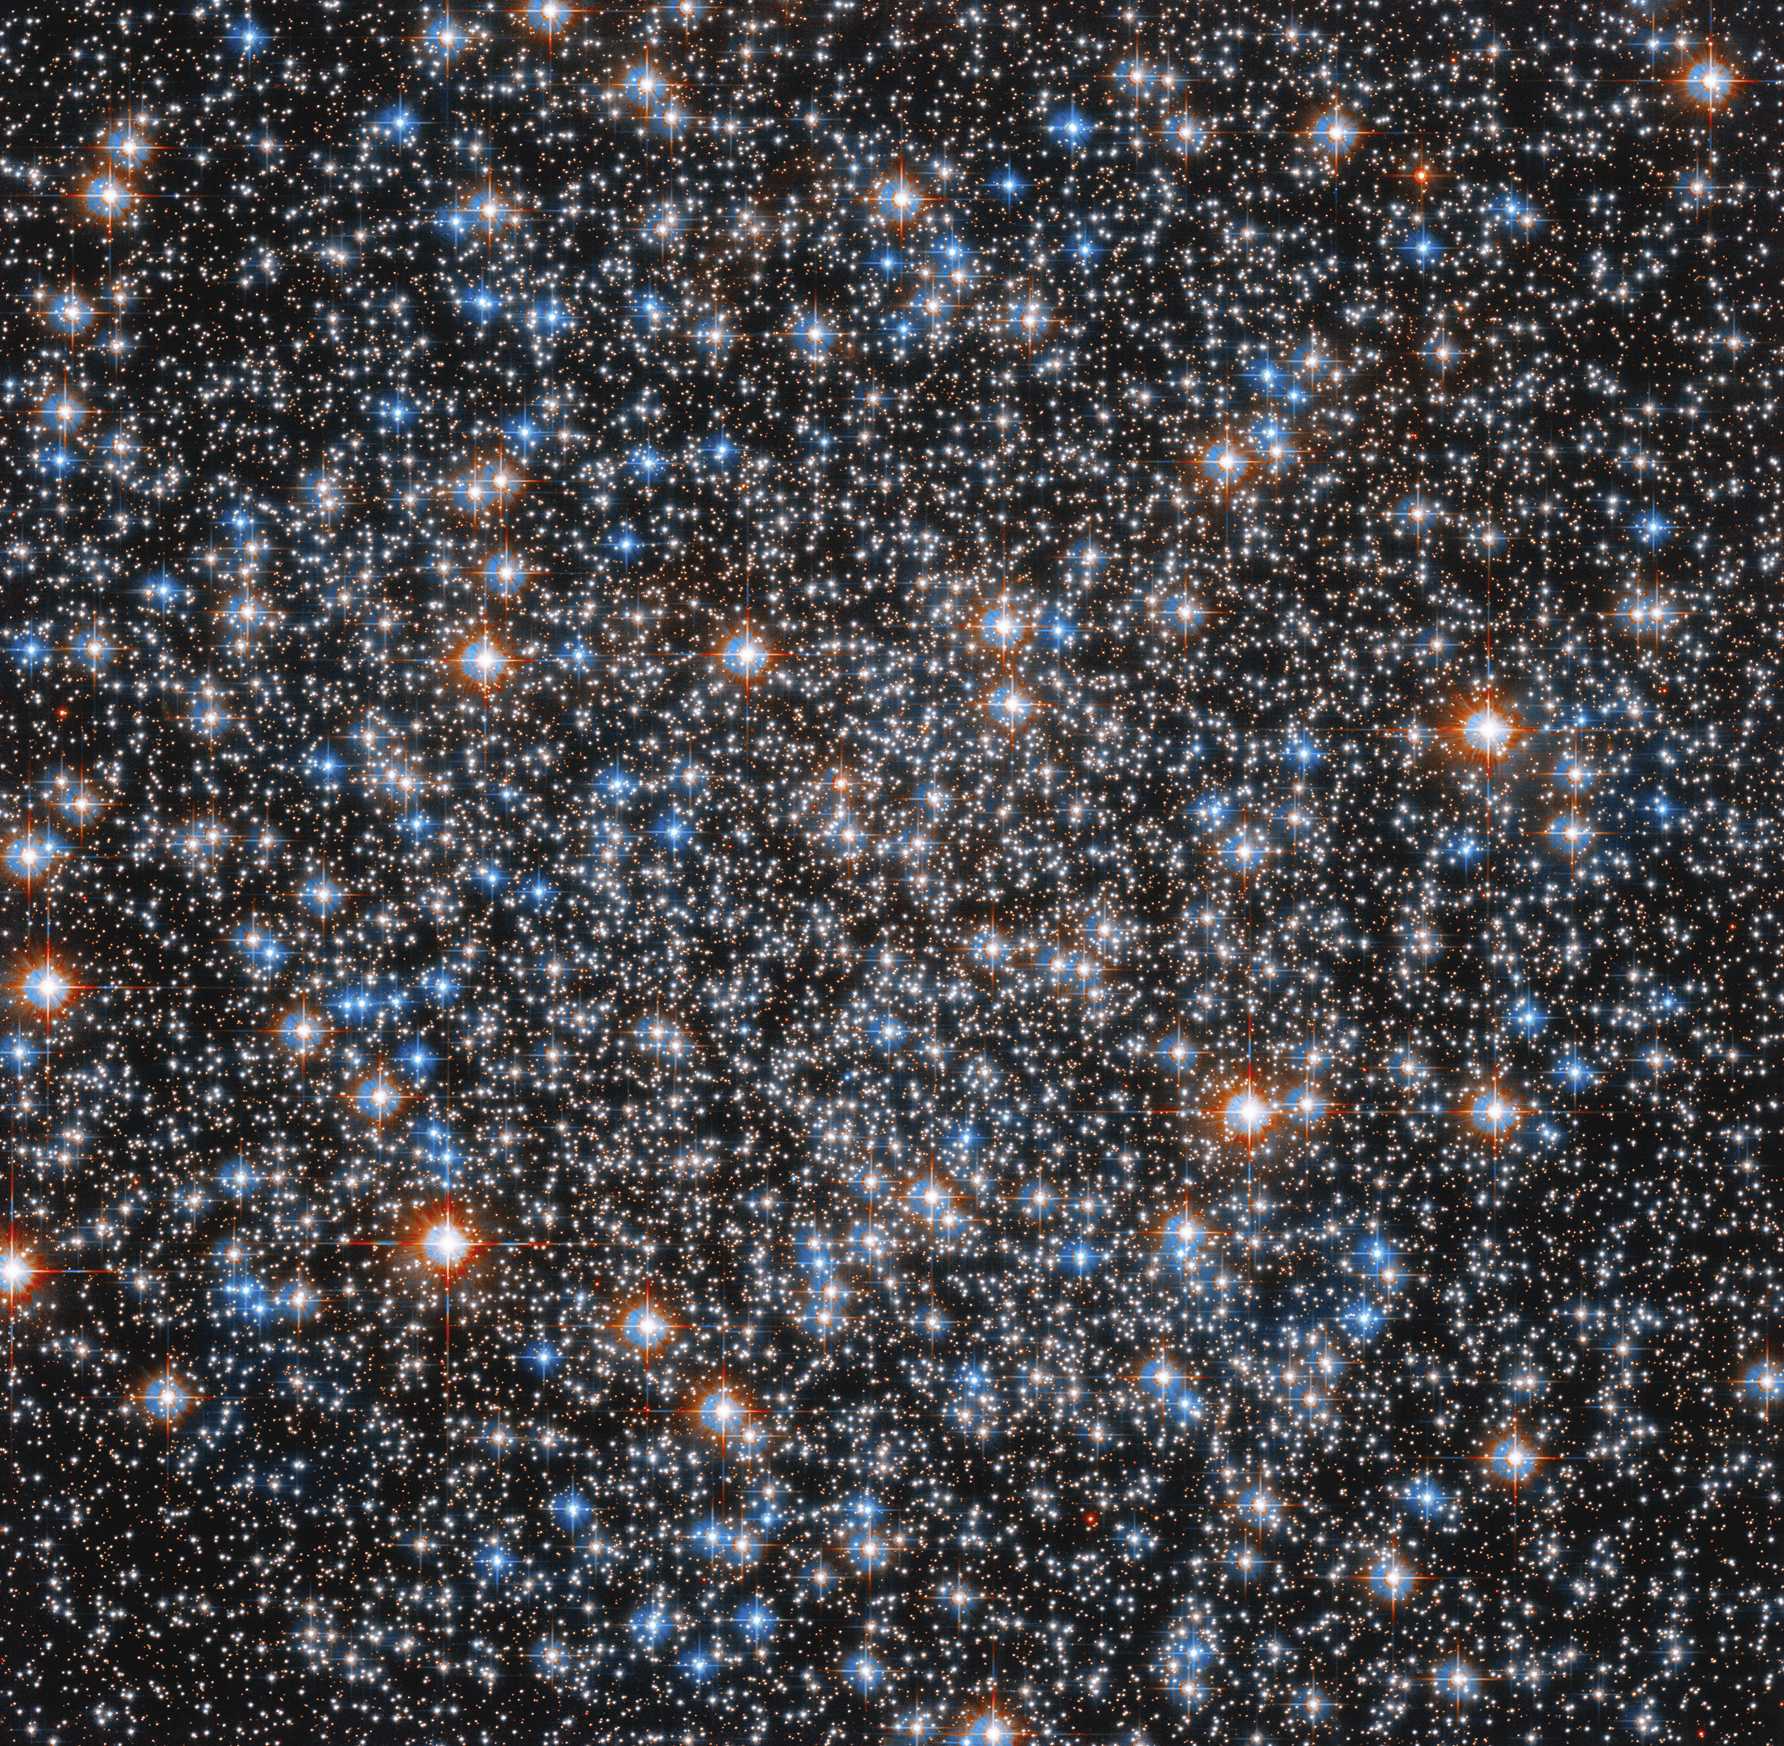 «Хаббл» представил четкое изображение шарового скопления M55